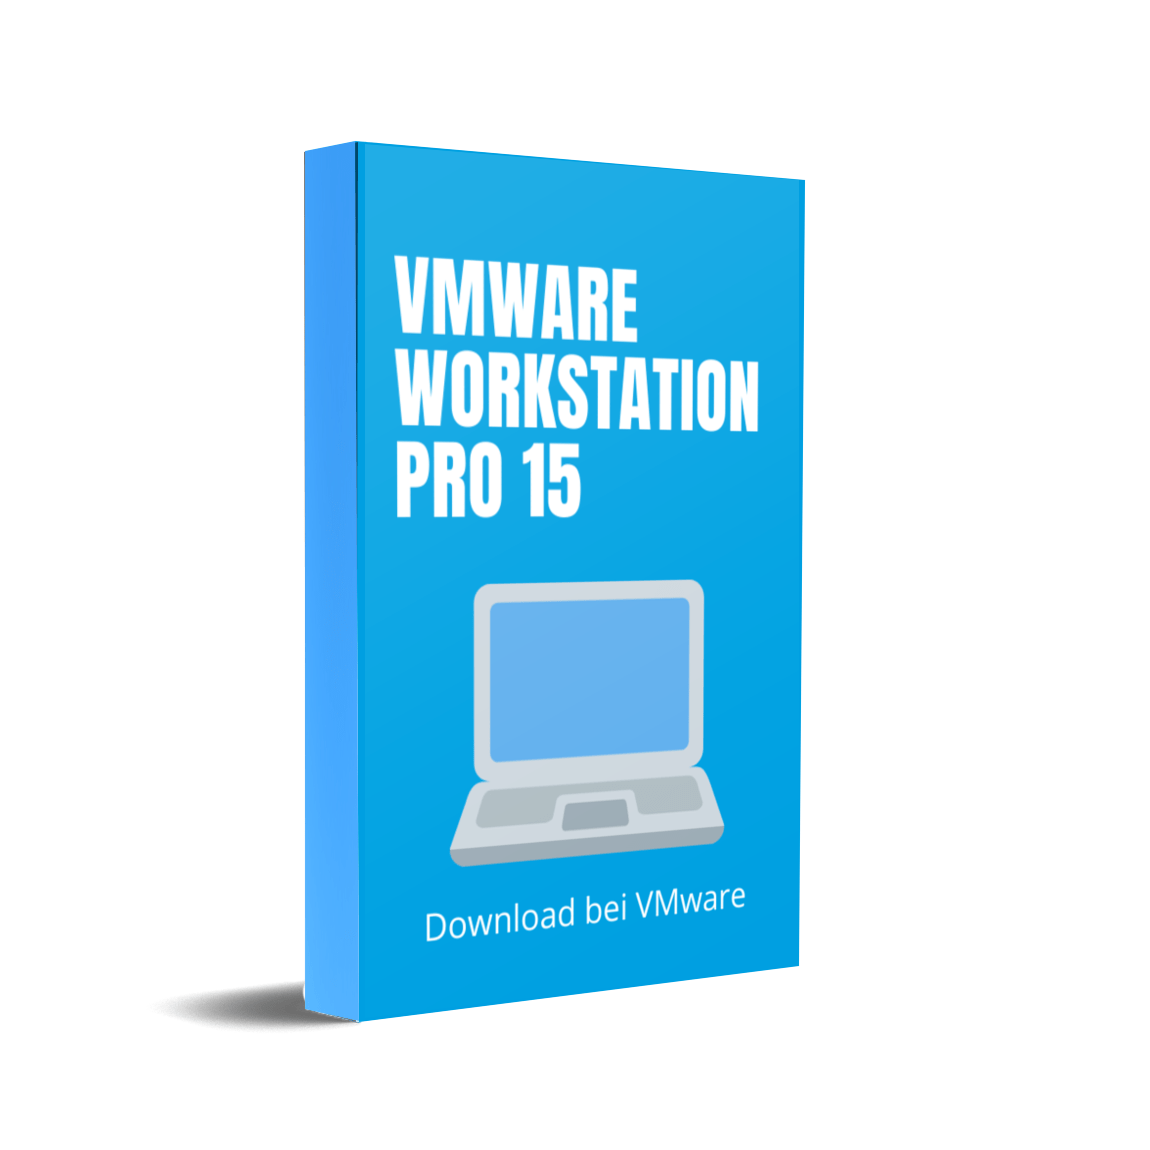 vmware workstation 15.5 pro download free